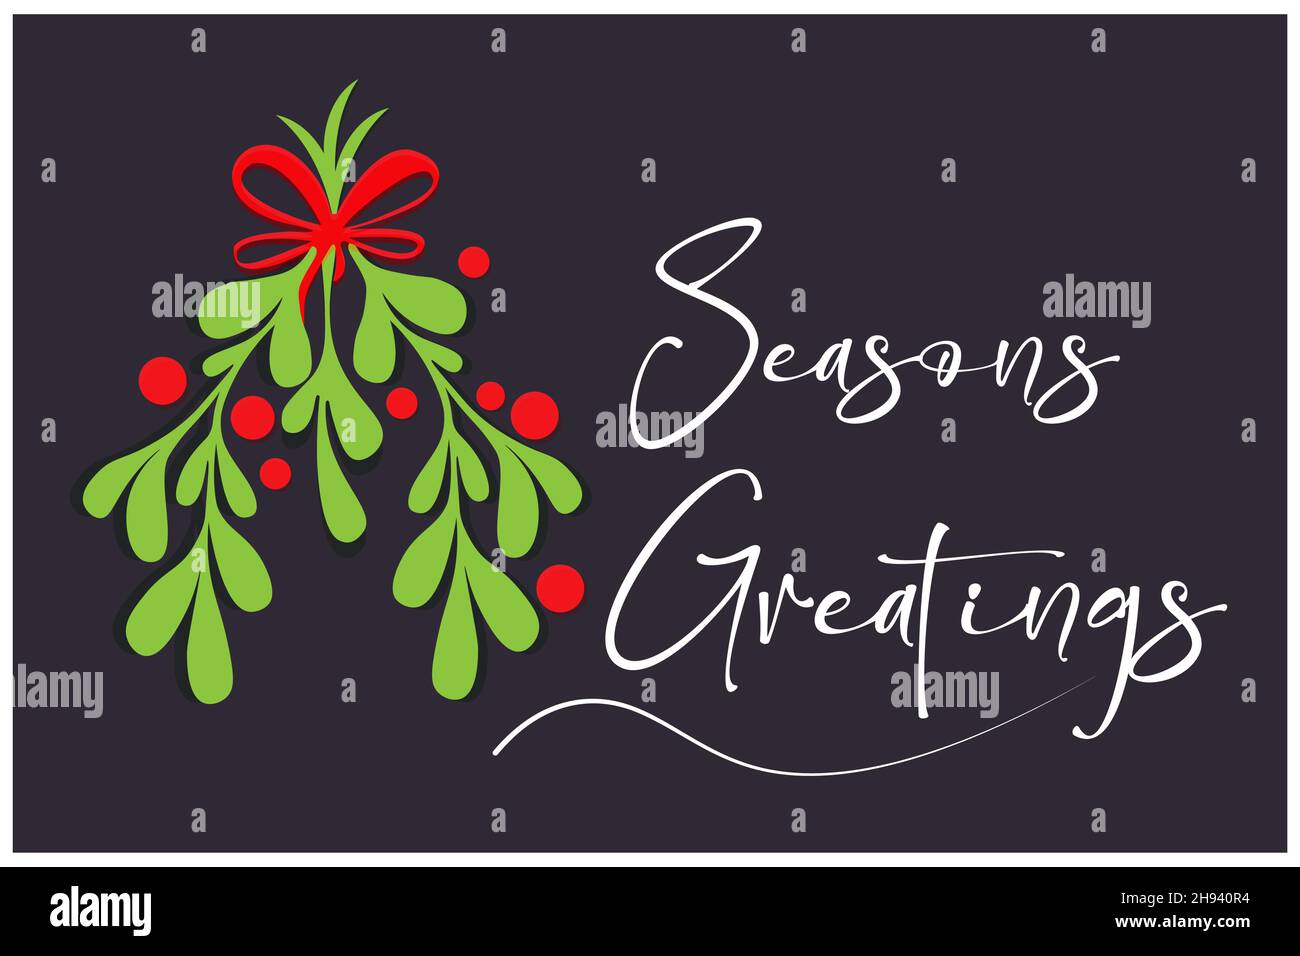 Jahreszeiten Grüße weiße Kalligraphie auf einem dunklen festlichen Hintergrund mit festlichen Stechpalme und Schnee. Ideal für Weihnachtskarten, Banner, etc - Vector EPS Stock Vektor